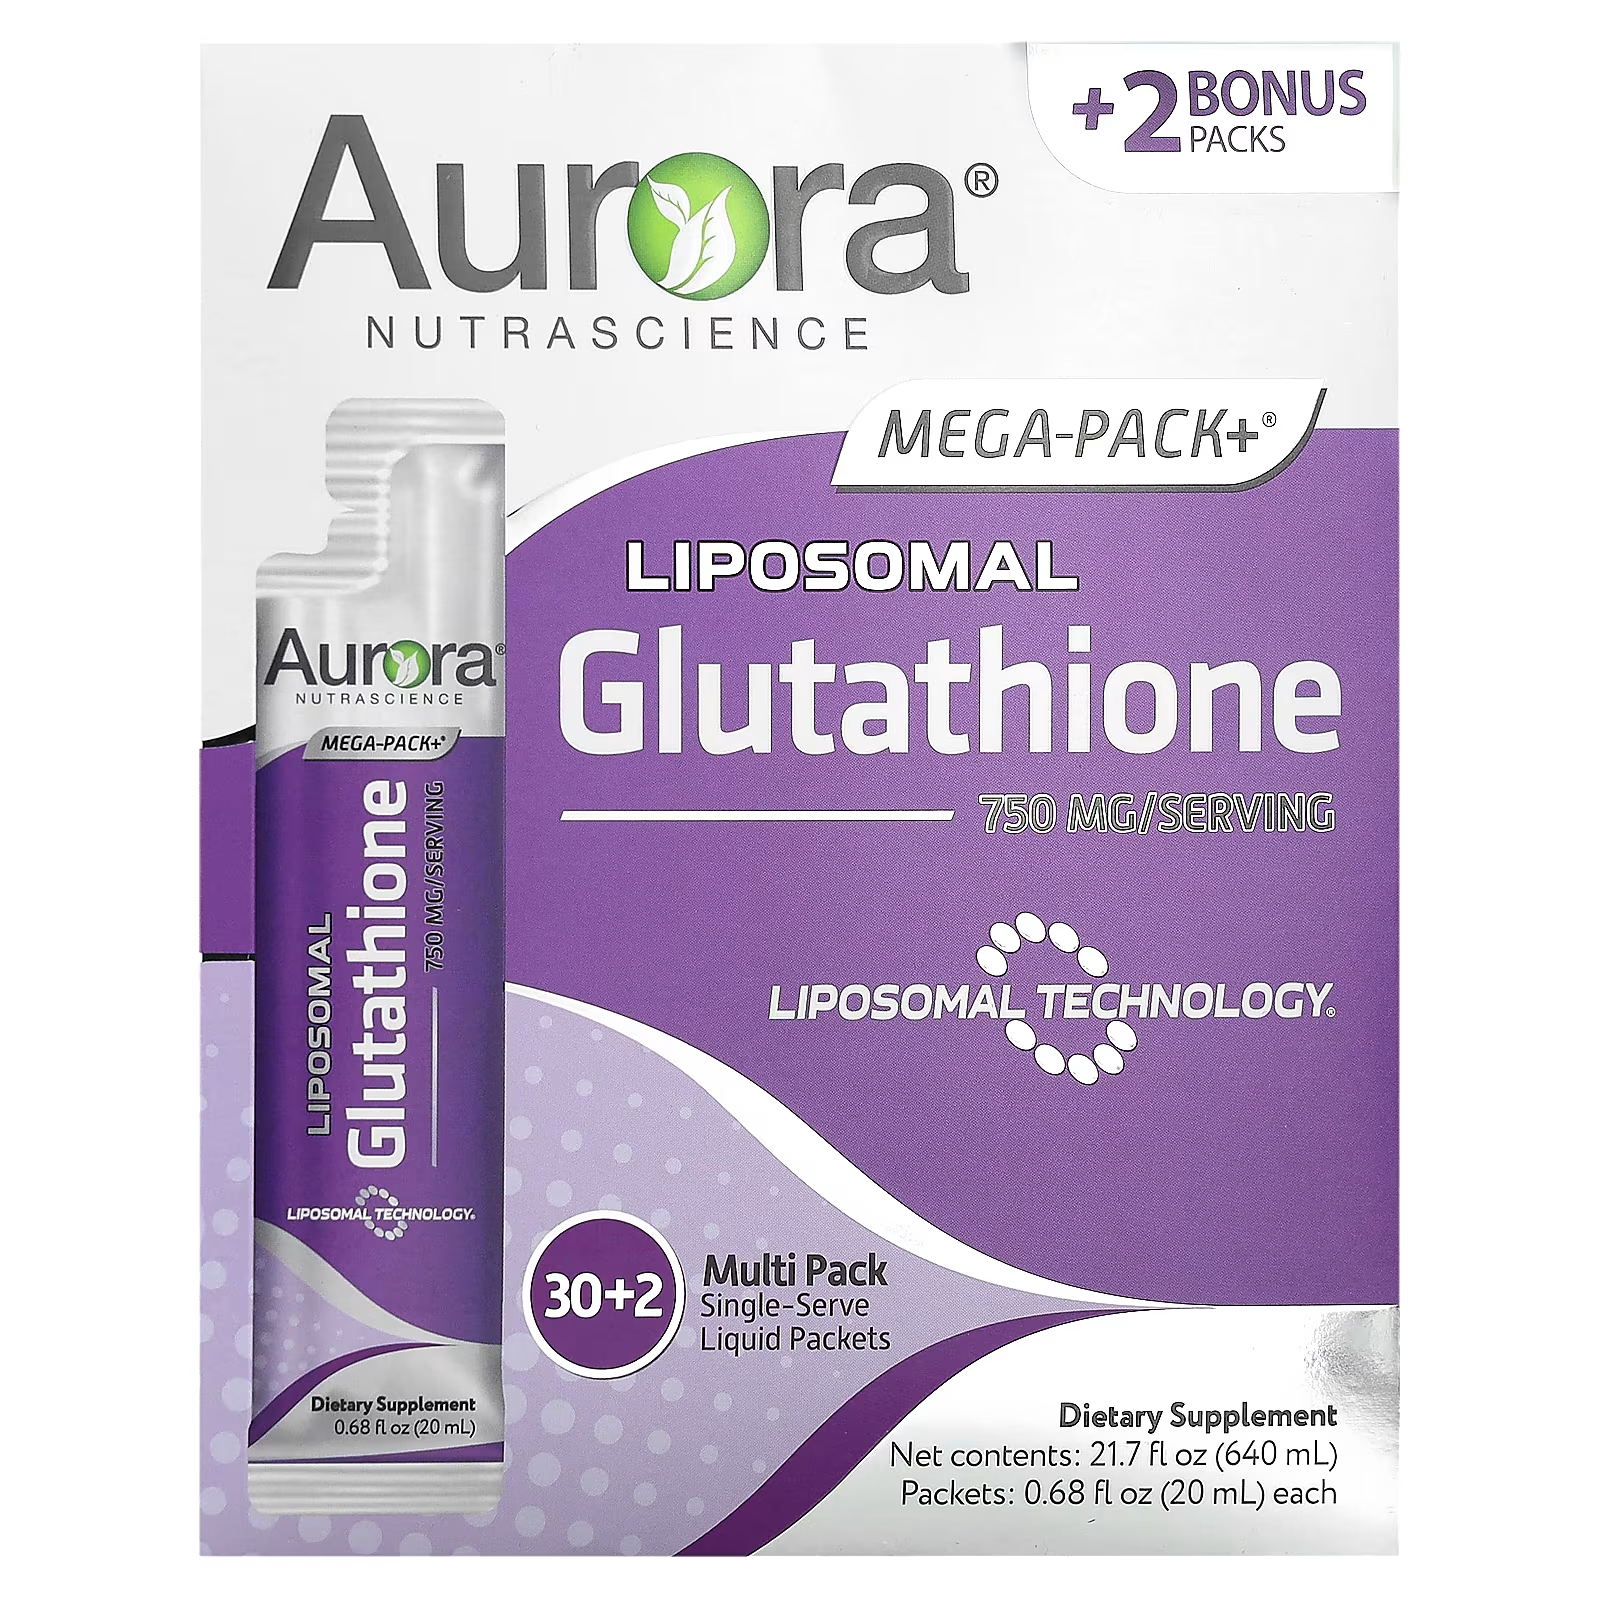 Aurora Nutrascience Mega-Pack+ липосомальный глутатион 750 мг, 32 упаковки по 0,68 жидкой унции (20 мл) каждая